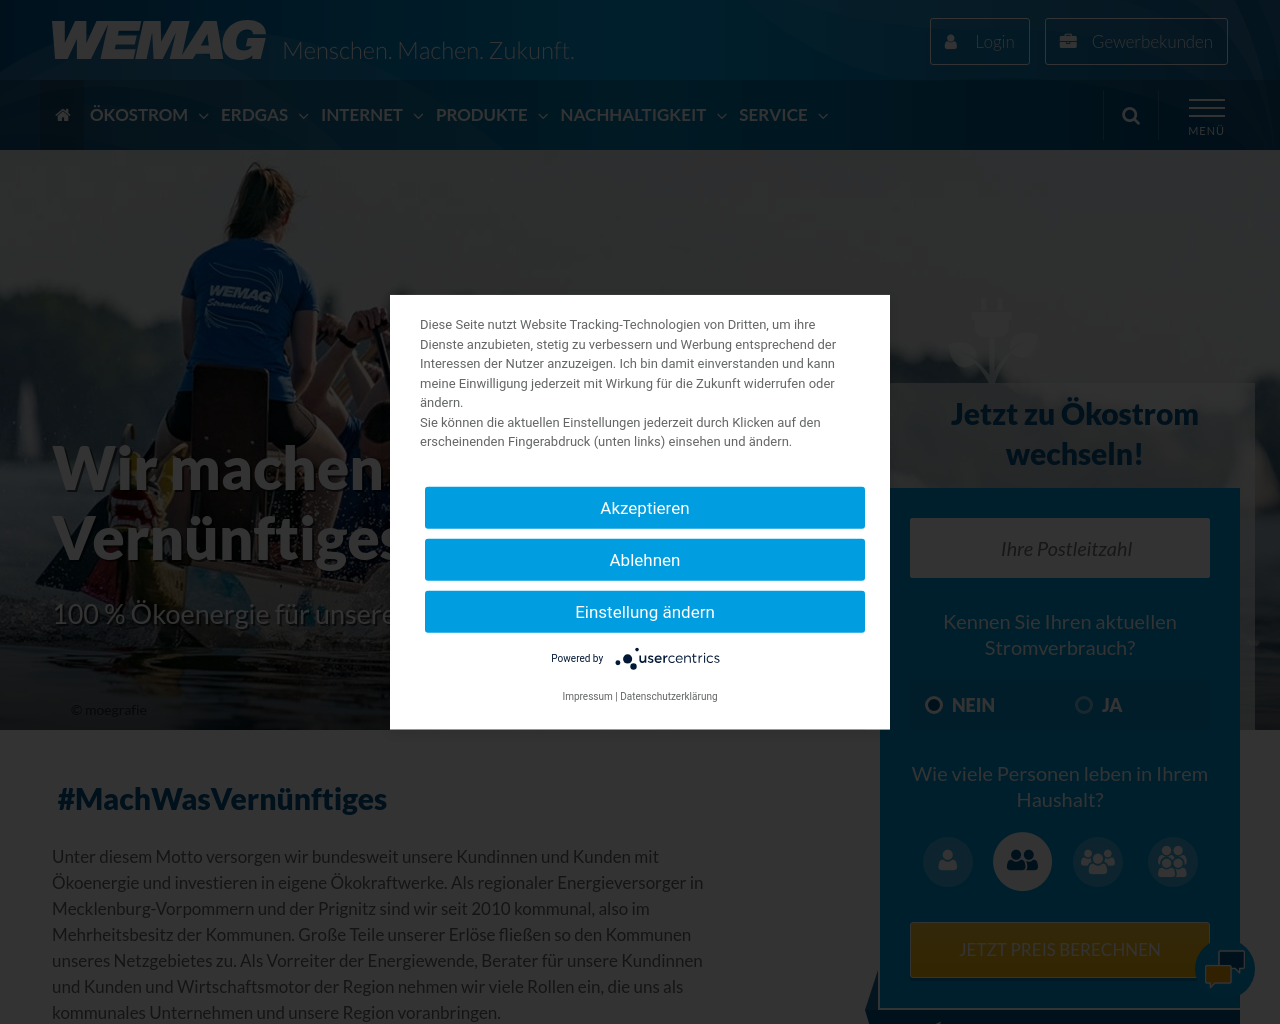 wemag.com